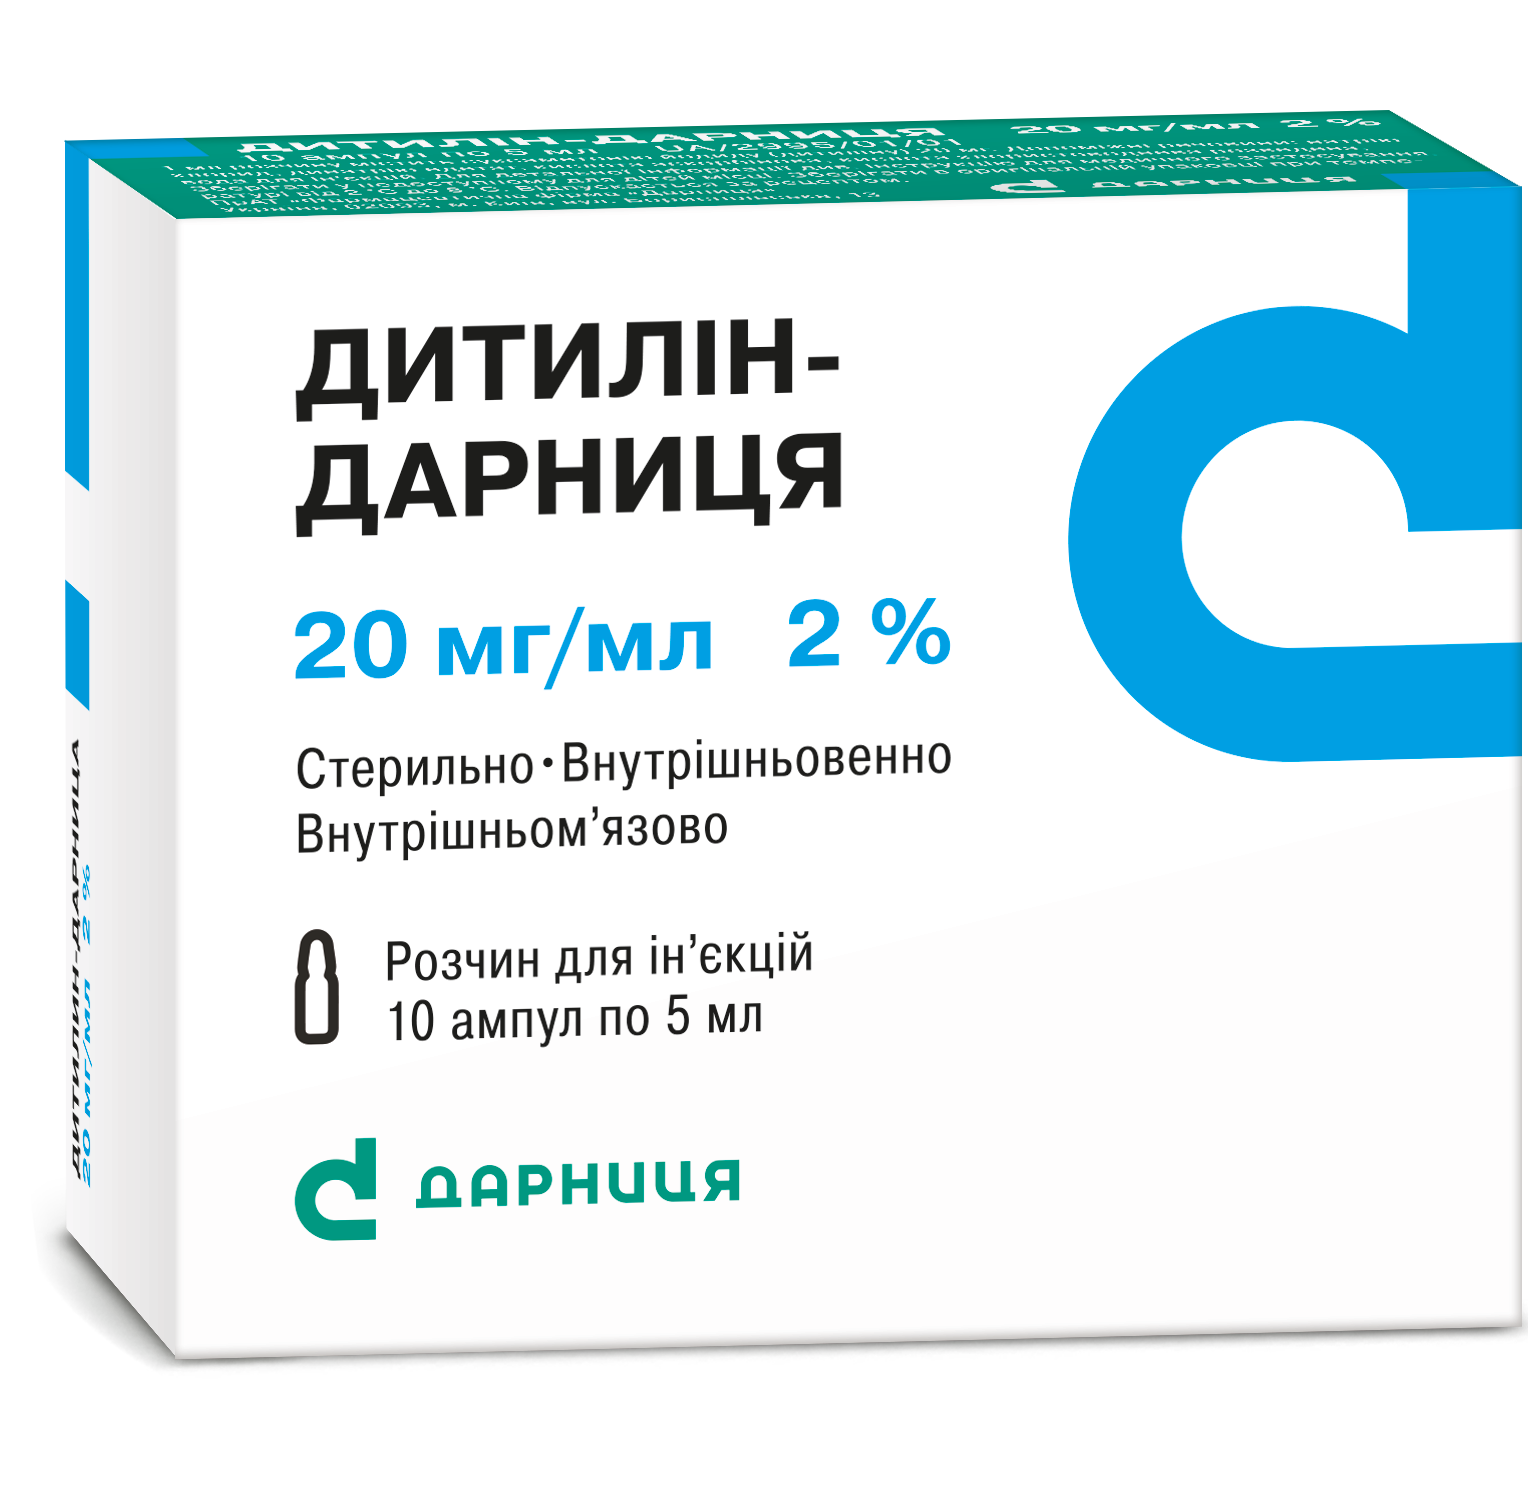 Dithylin-Darnitsa